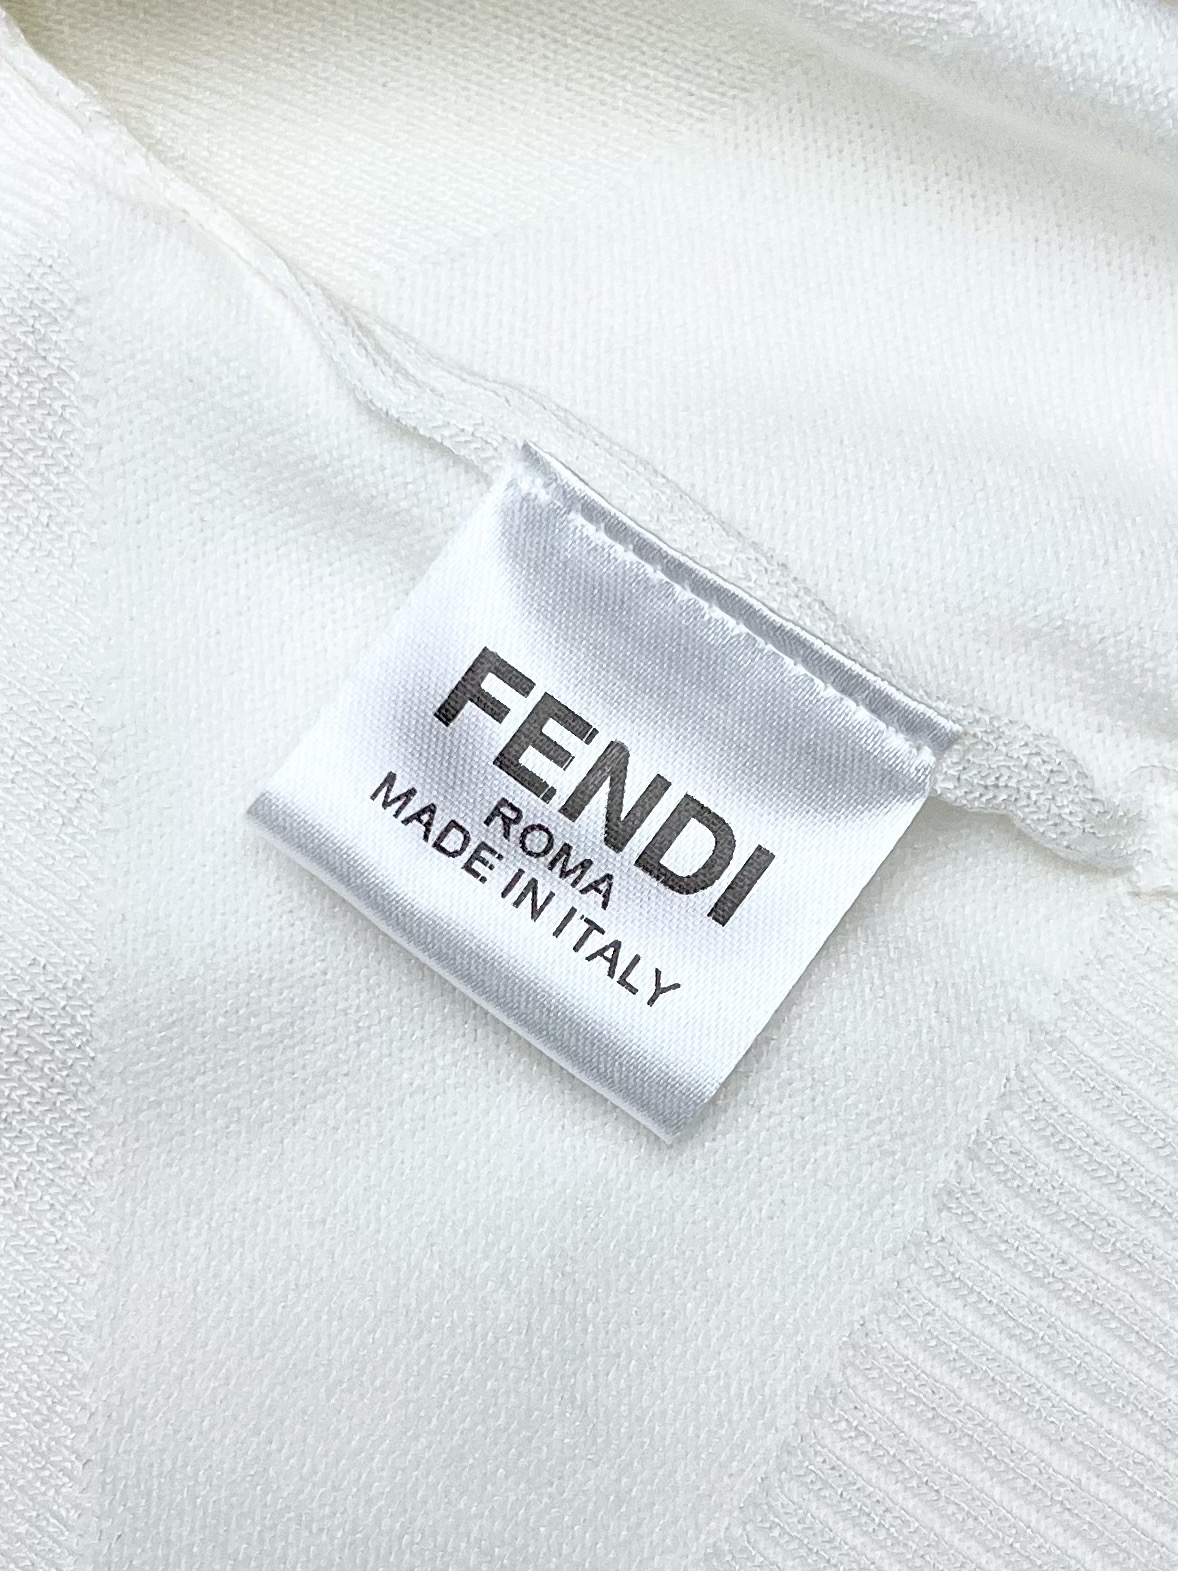 Fend*24ss新款毛衣针织短袖超经典设计简约没有任何多余累赘感衣橱不可缺少的一件百搭单品采用优质羊毛